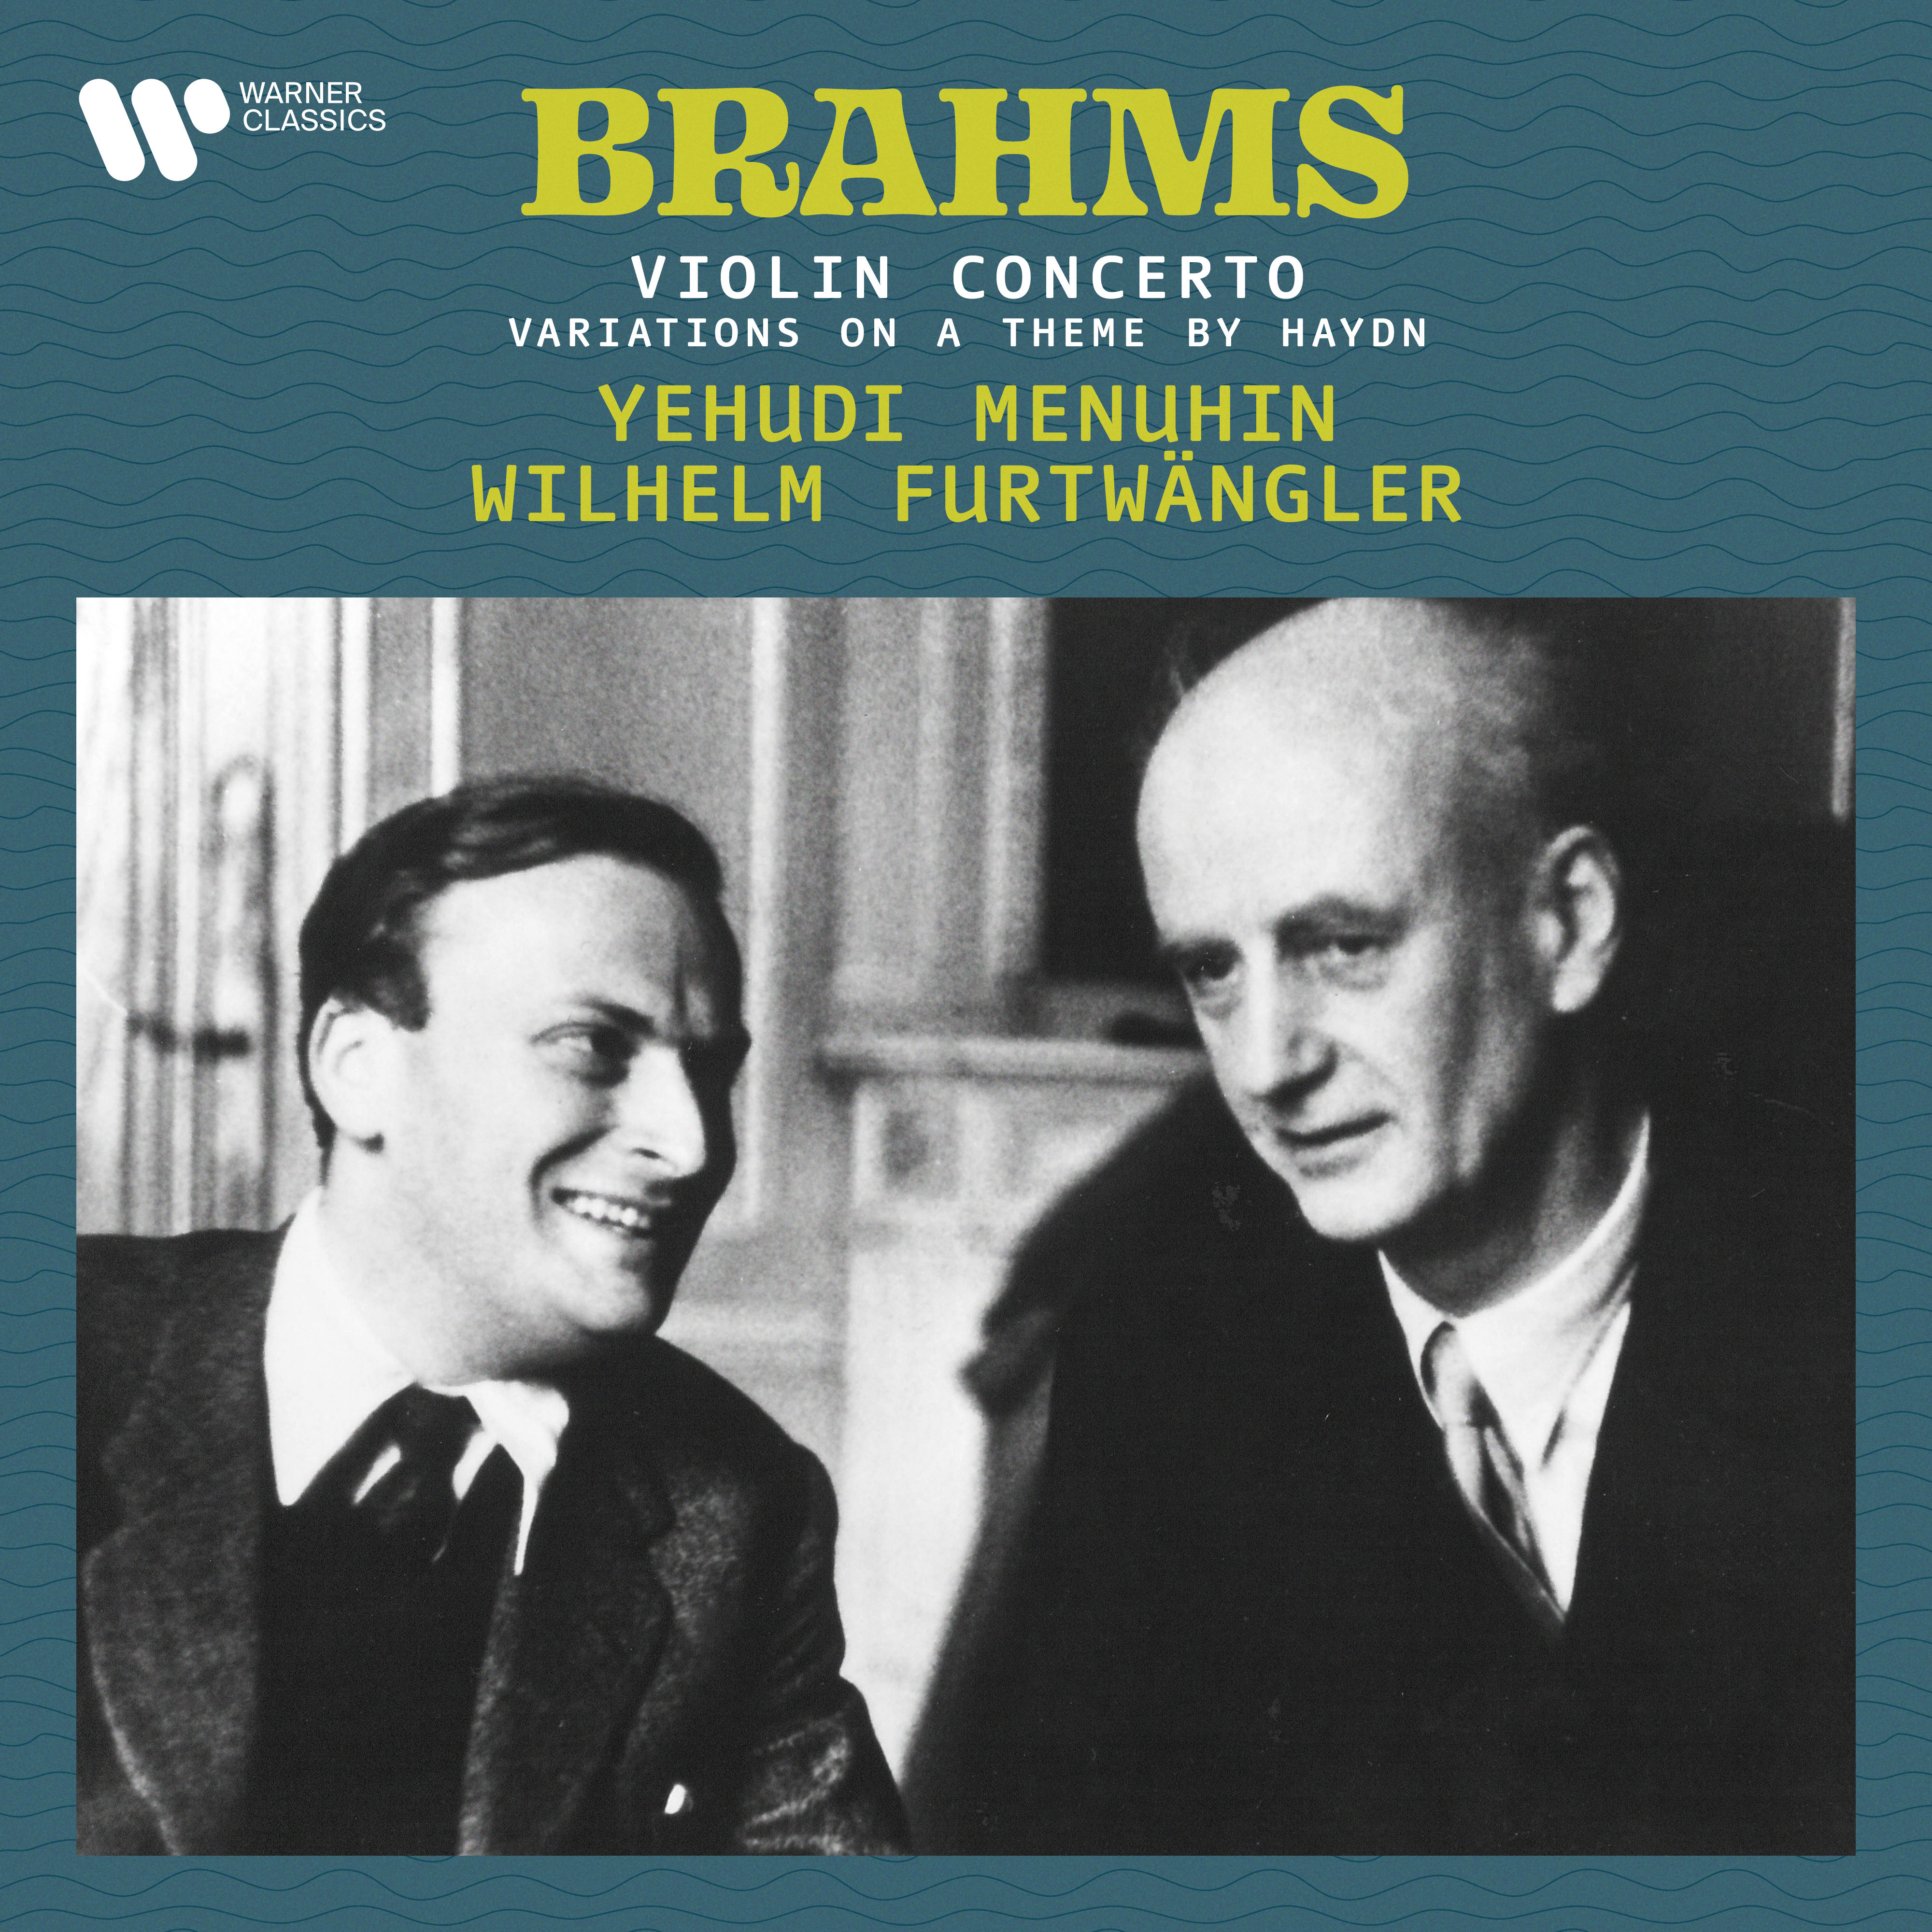 Yehudi Menuhin – Brahms- Variations on a Theme by Haydn, Op. 56a & Violin Concerto, Op. 77